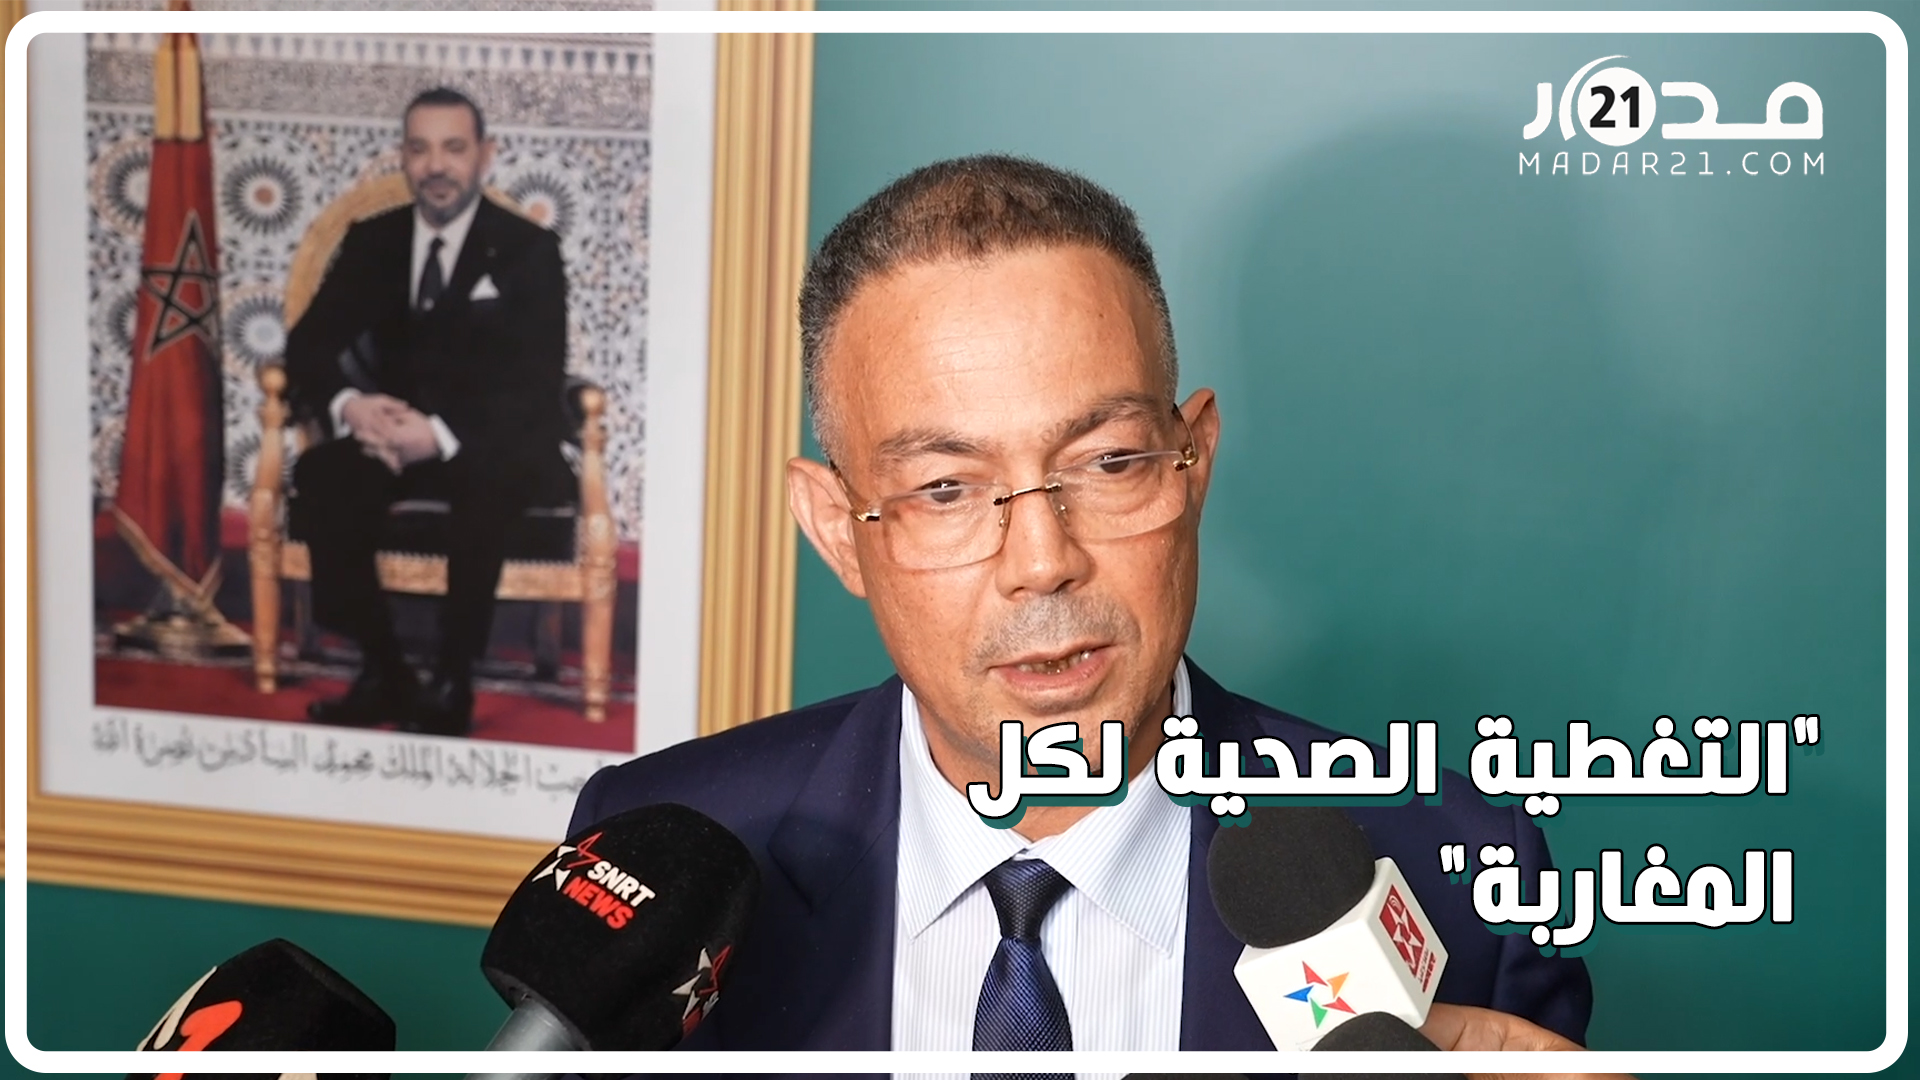 لقجع: الحكومة تعمل على أن يكون المغاربة جميعهم منخرطون في التغطية الصحية في 2022